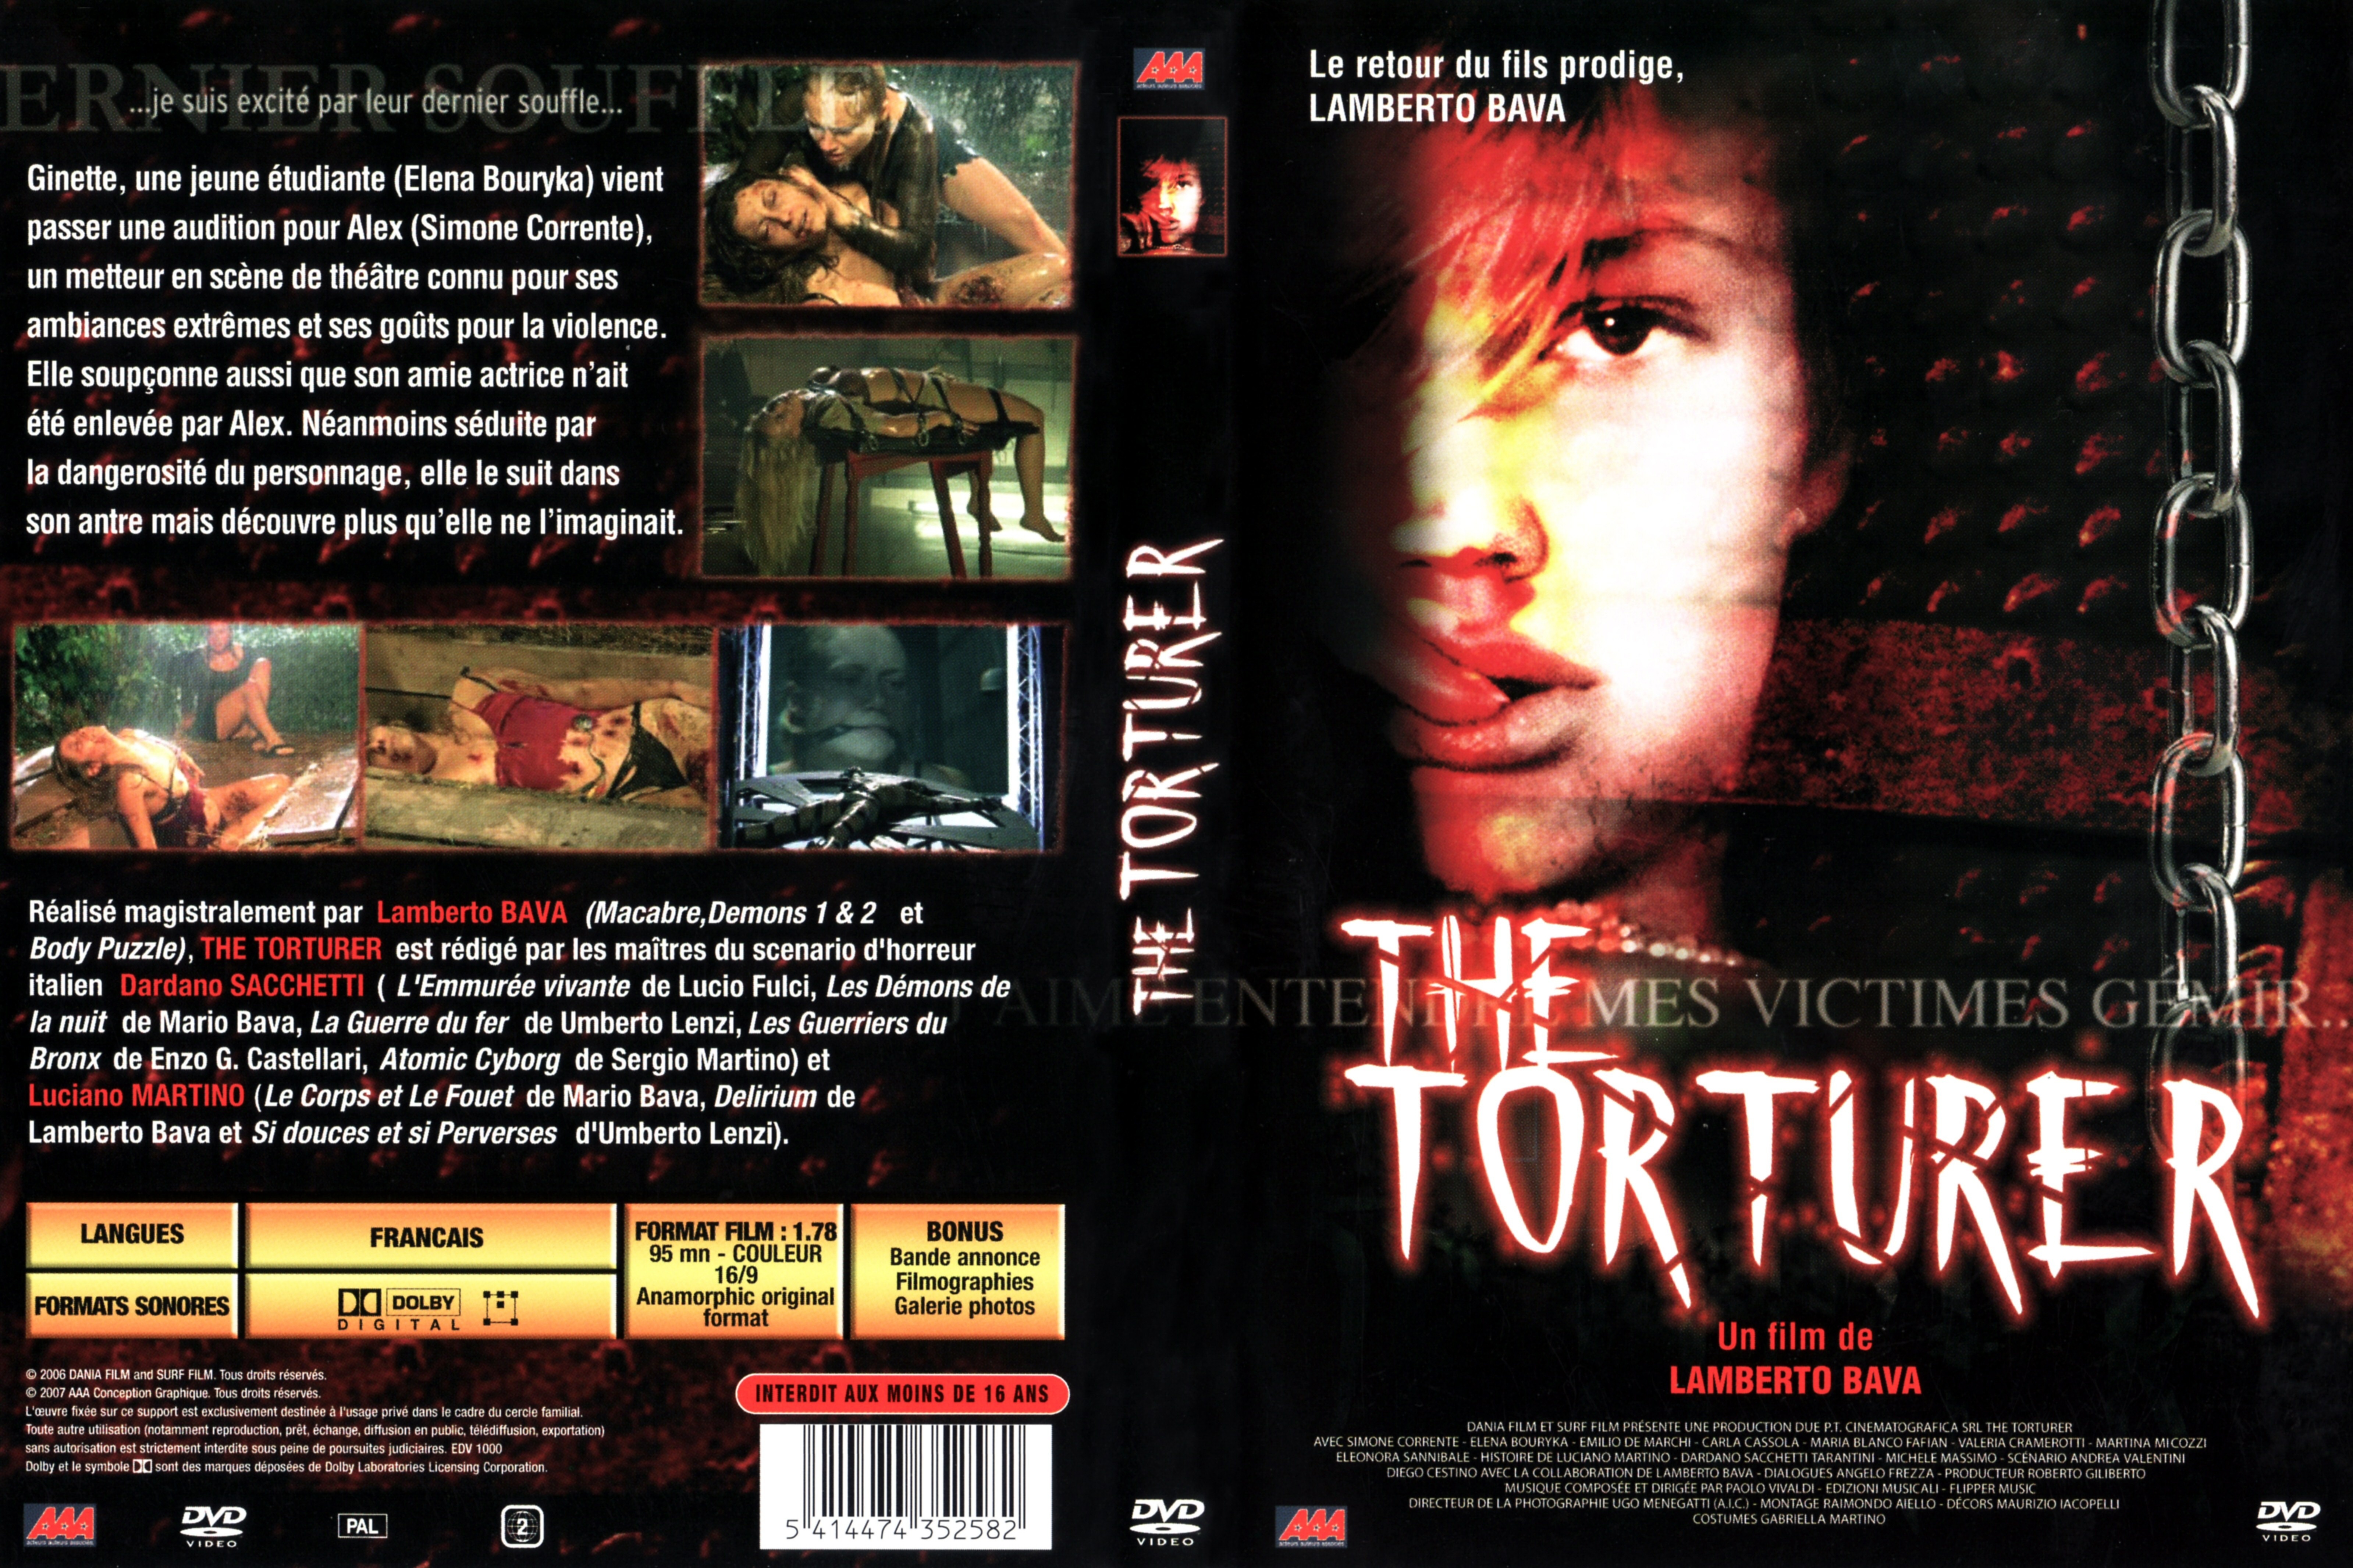 Jaquette DVD The torturer v2